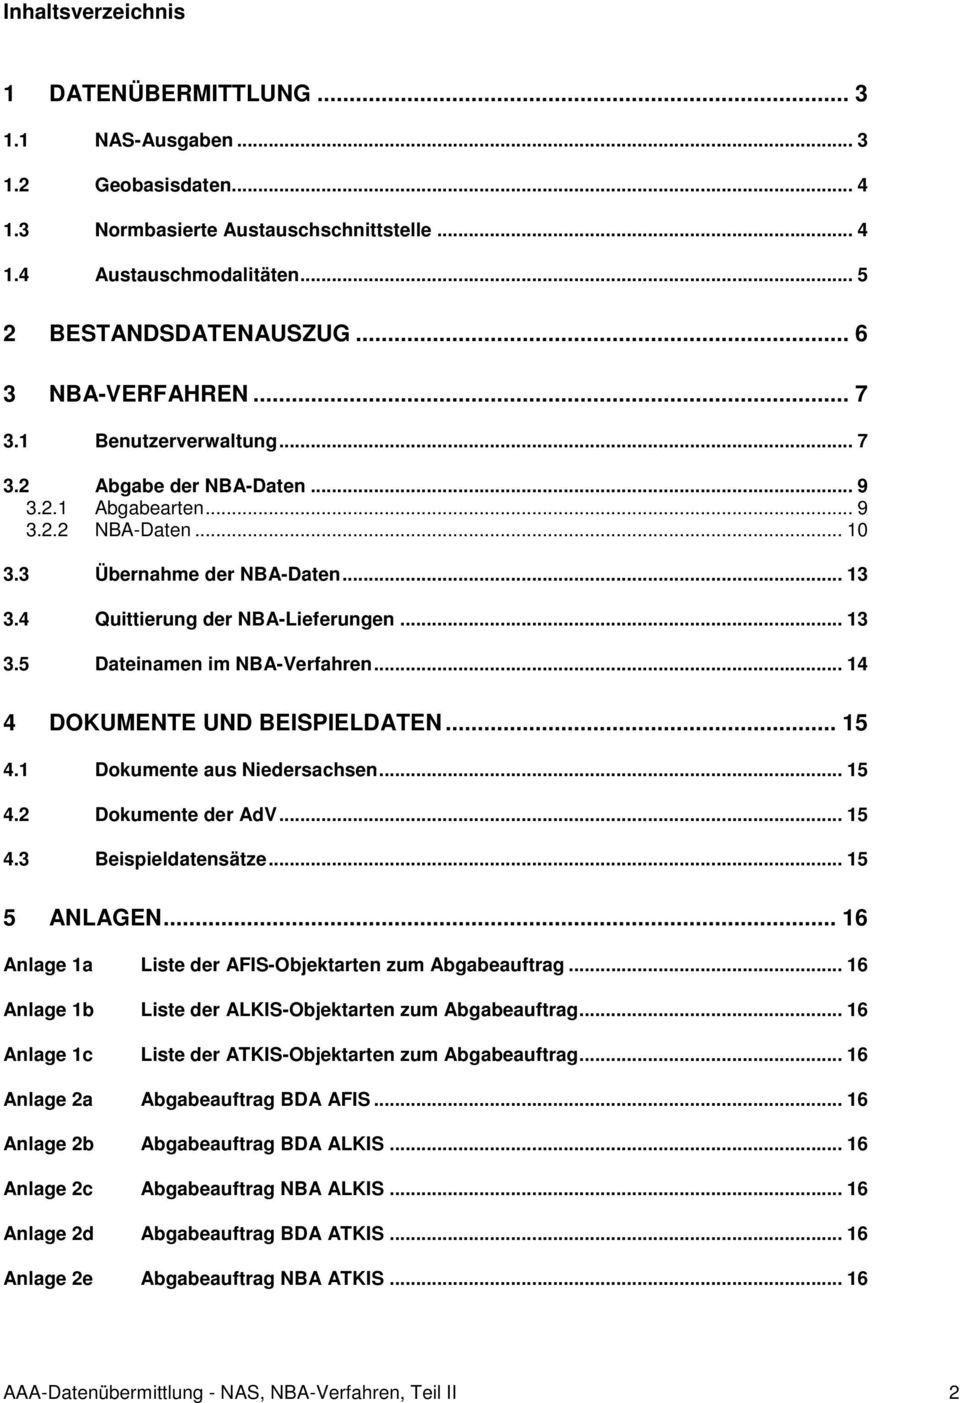 .. 13 3.5 Dateinamen im NBA-Verfahren... 14 4 DOKUMENTE UND BEISPIELDATEN... 15 4.1 Dokumente aus Niedersachsen... 15 4.2 Dokumente der AdV... 15 4.3 Beispieldatensätze... 15 5 ANLAGEN.